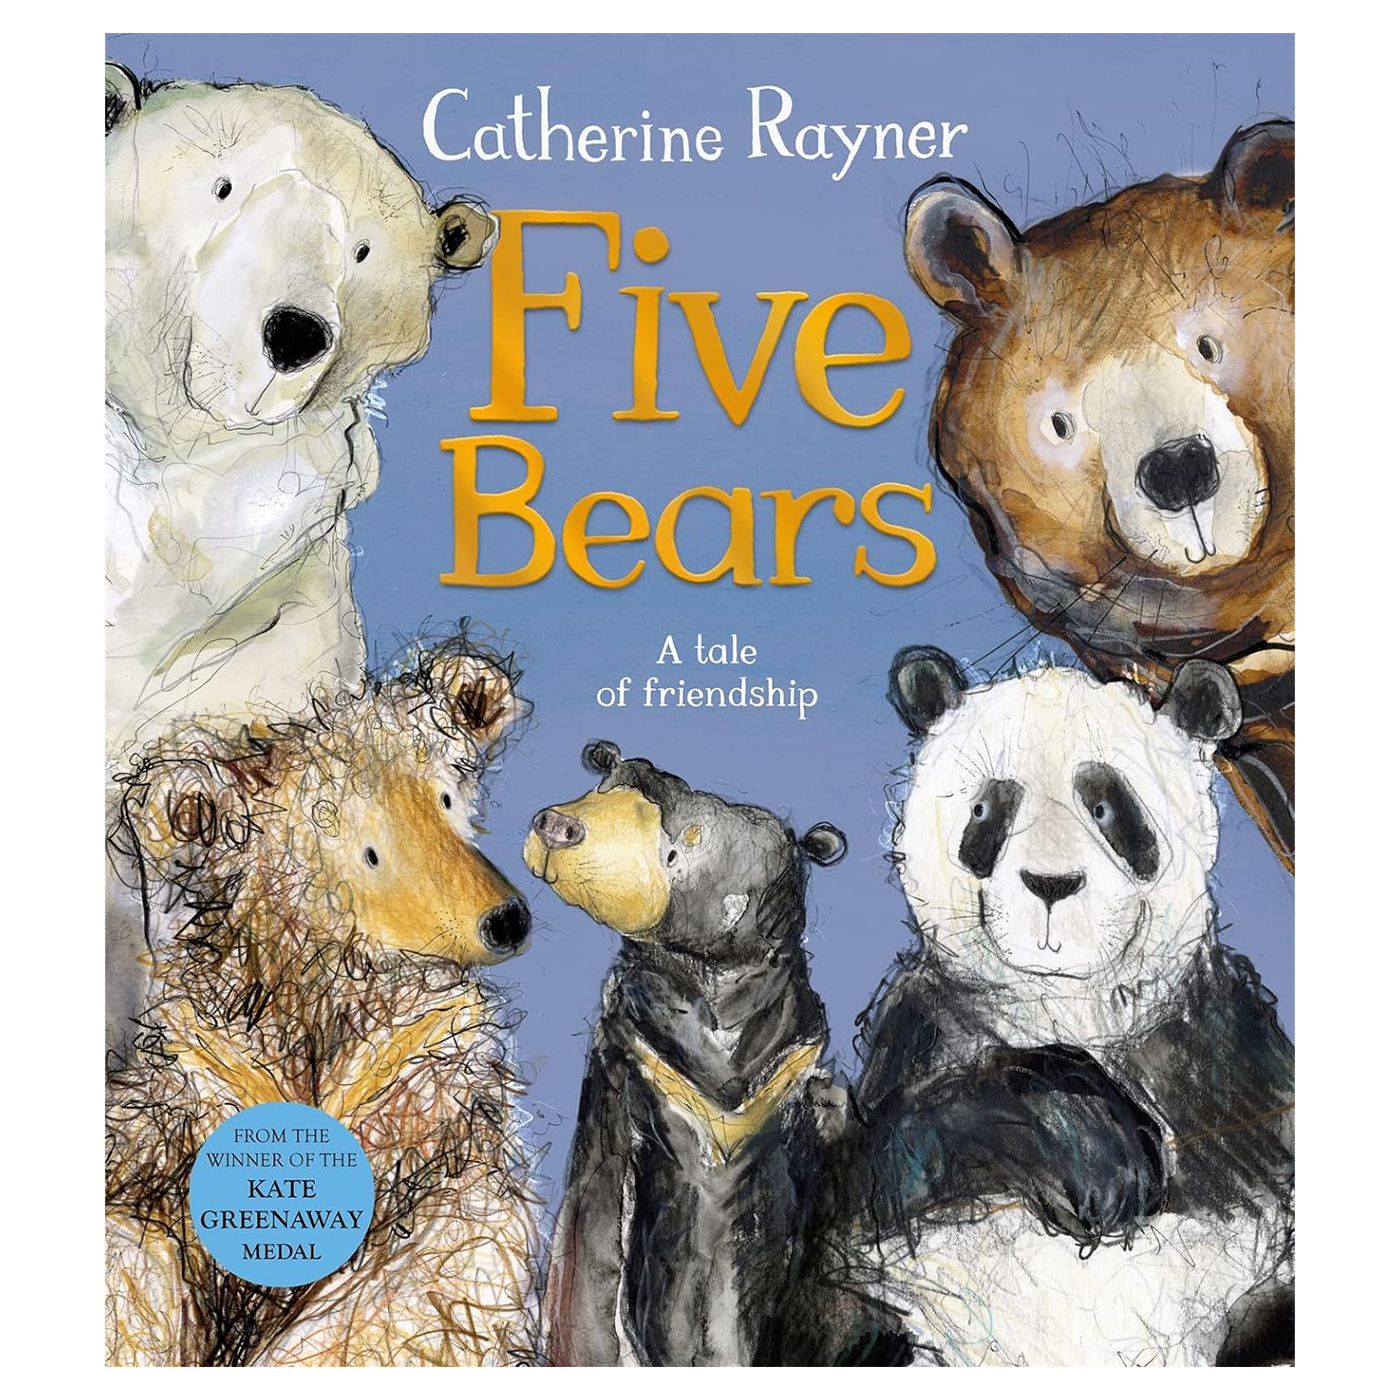  Five Bears: A Tale of Friendship